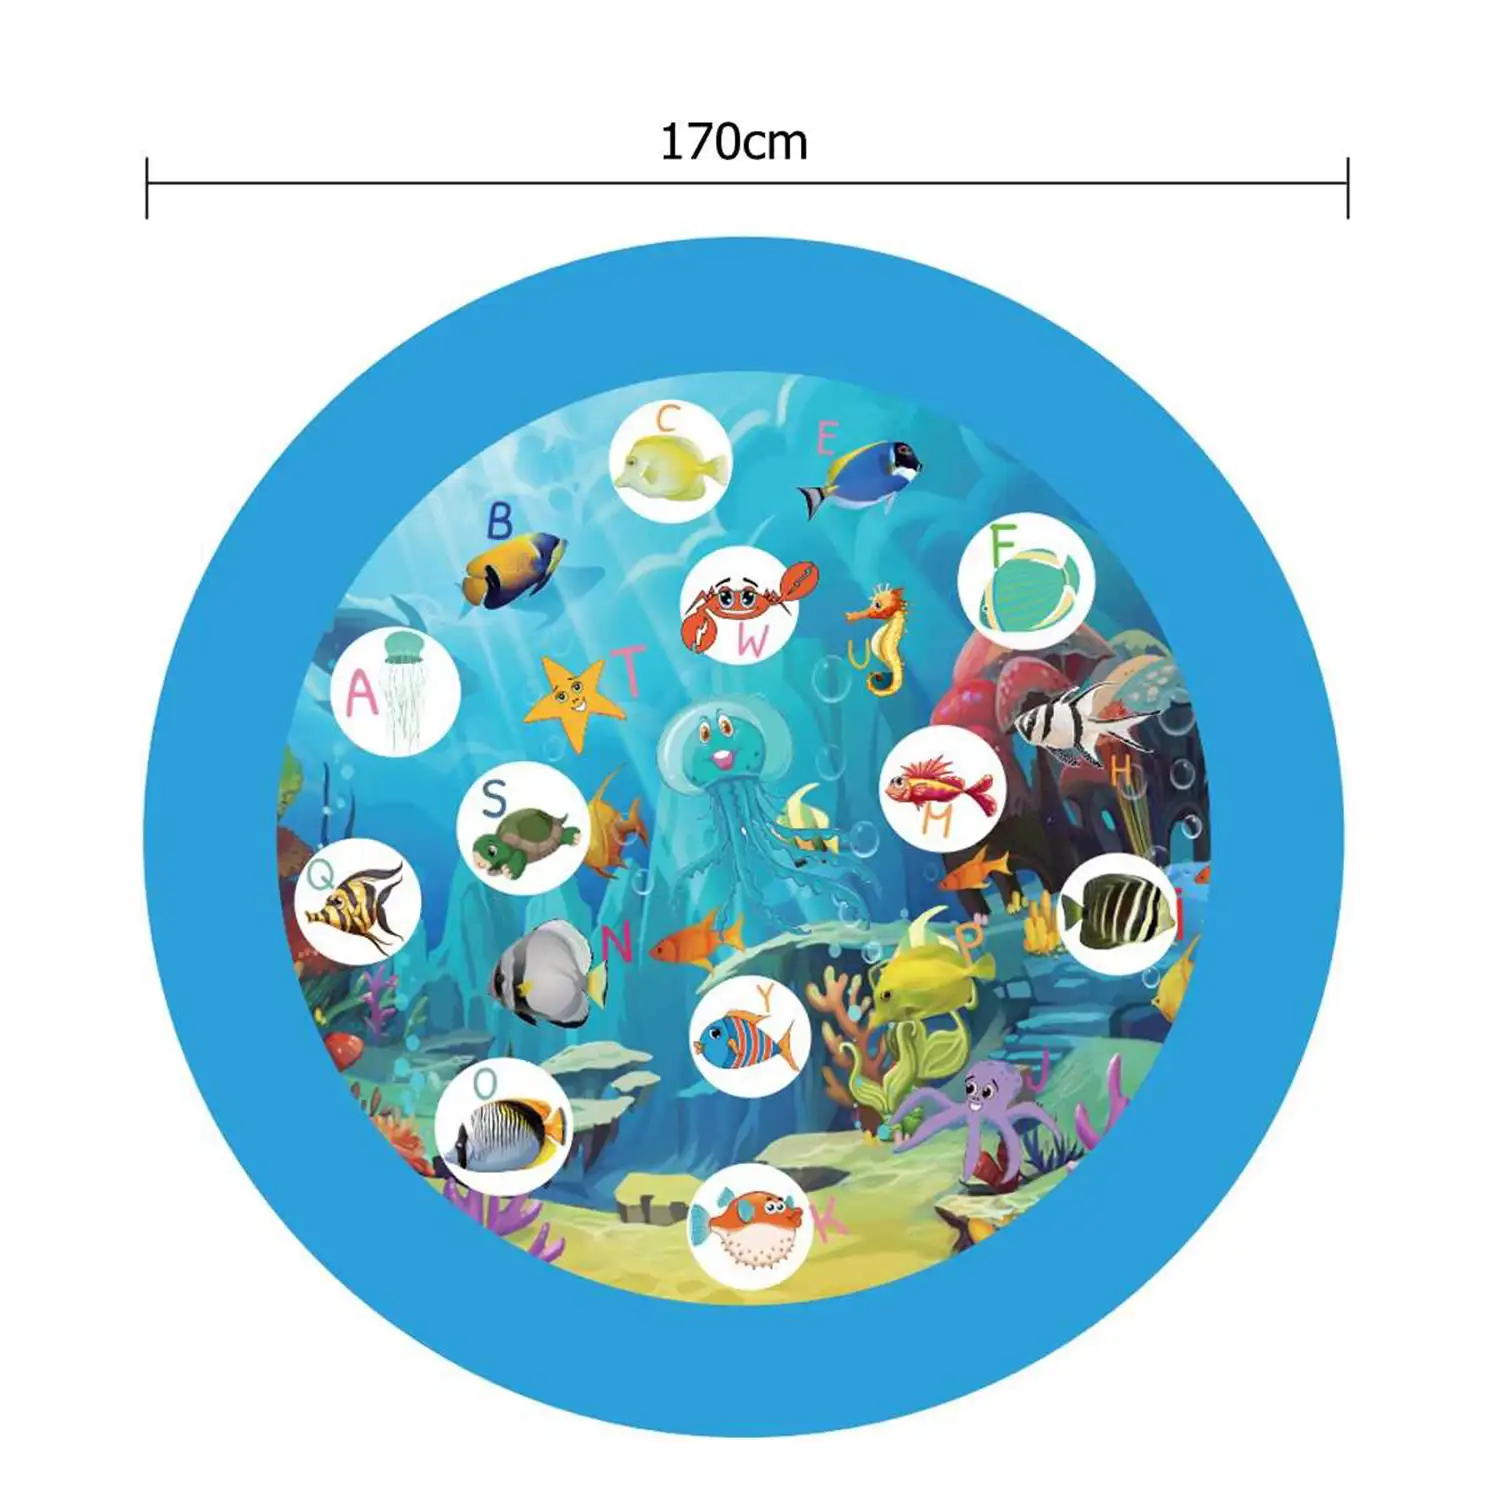 Splash Pad. Juguete inflable con aspersor de agua para jugar. 170cm de diámetro. Diseño animalitos marinos y abecedario.